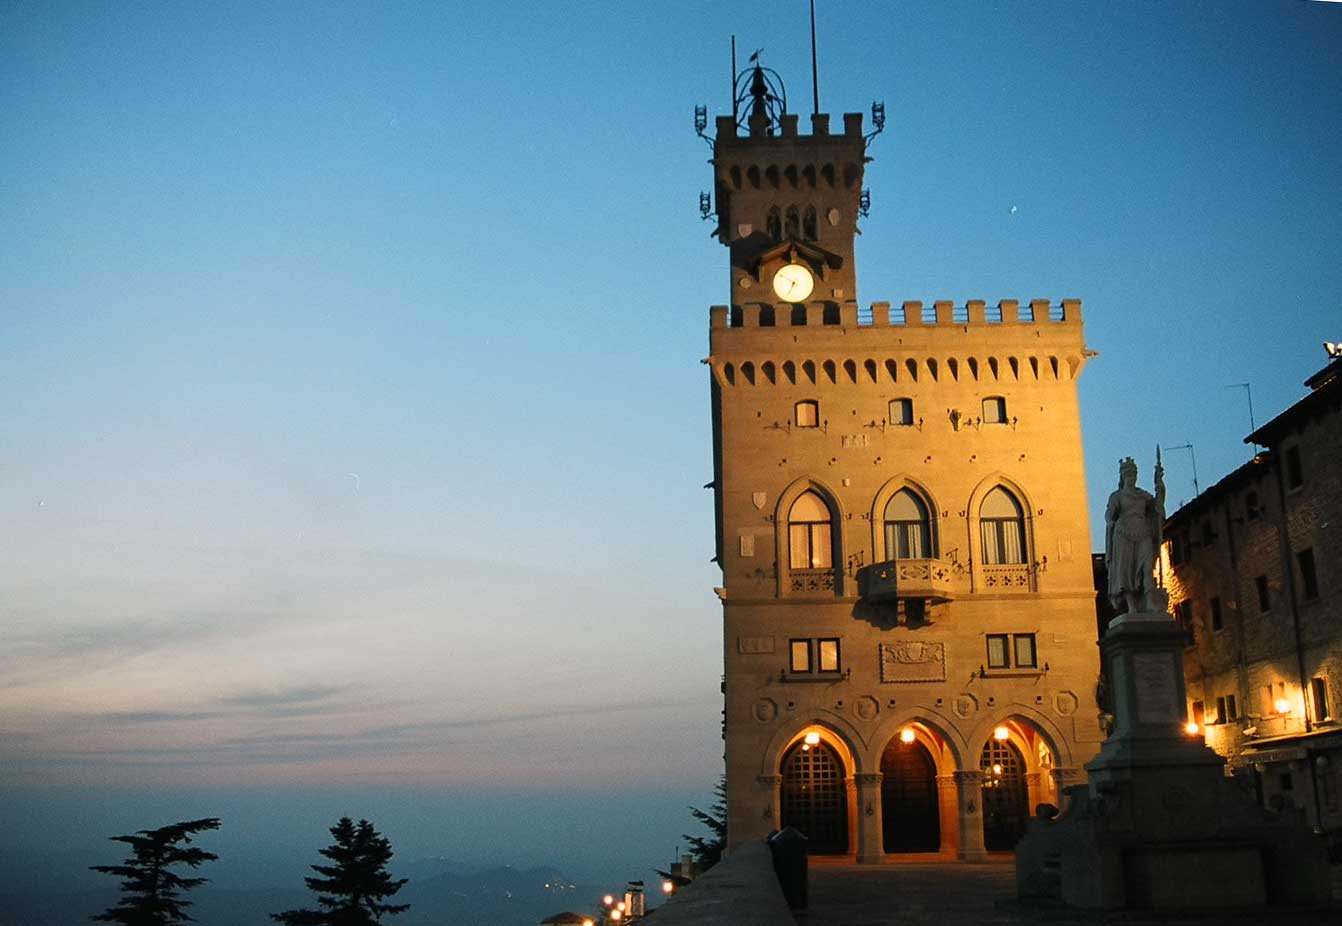 Сан марино буквы. Правительственный дворец Сан Марино. Палаццо публико Сан-Марино. Сан-Марино (город). Сан-Марино 9 замков.